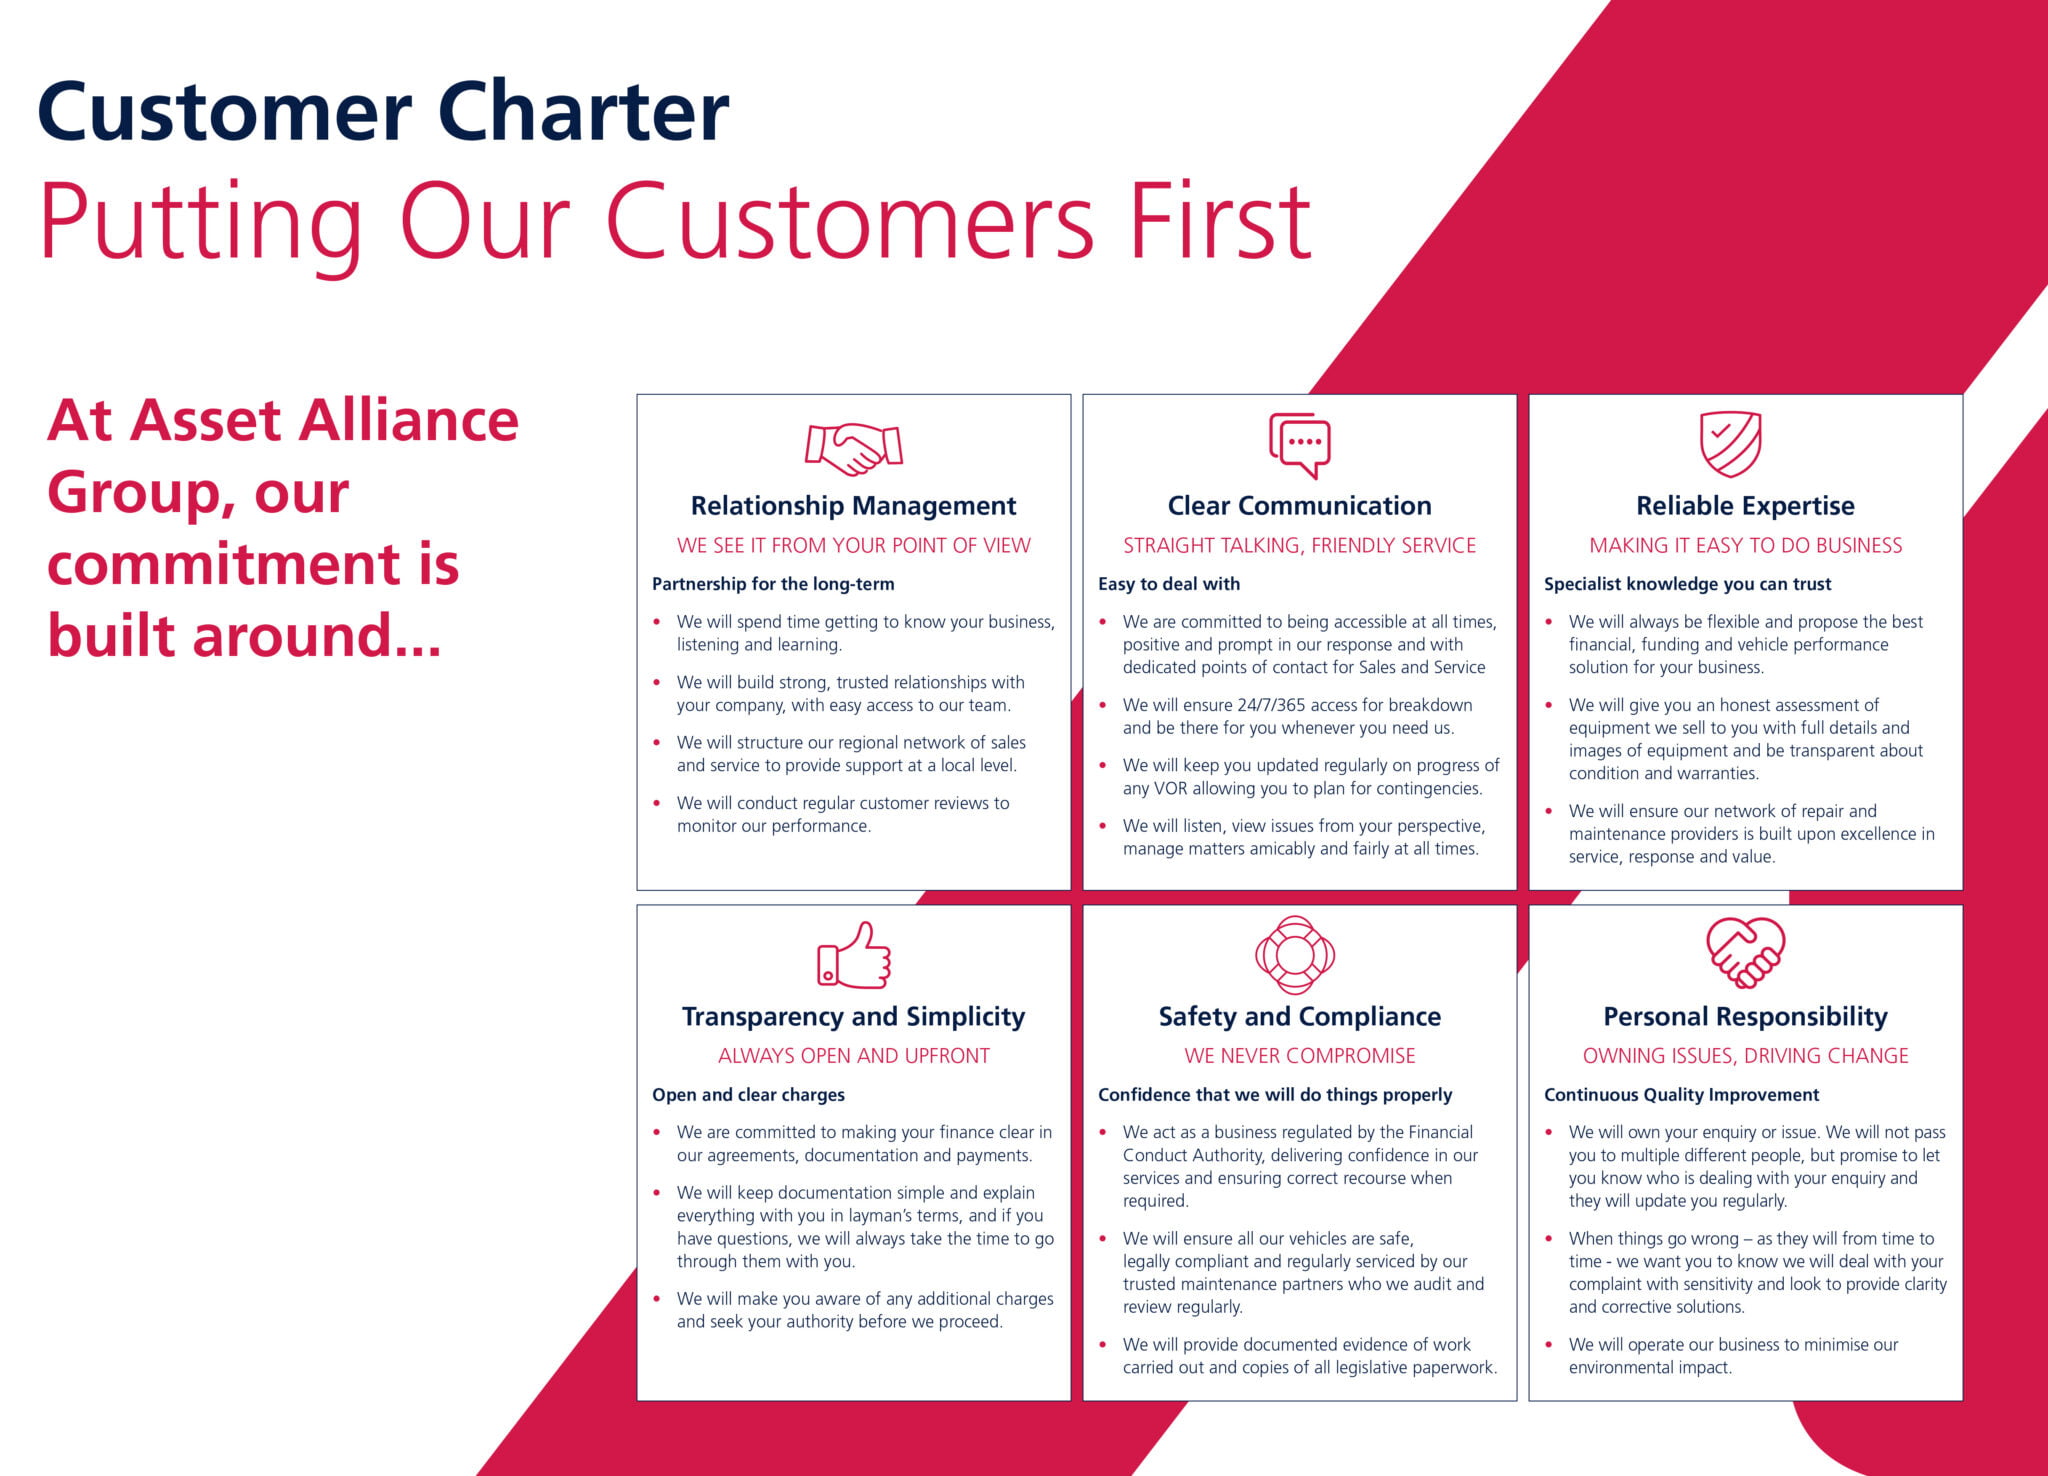 Customer Charter Asset Alliance Group